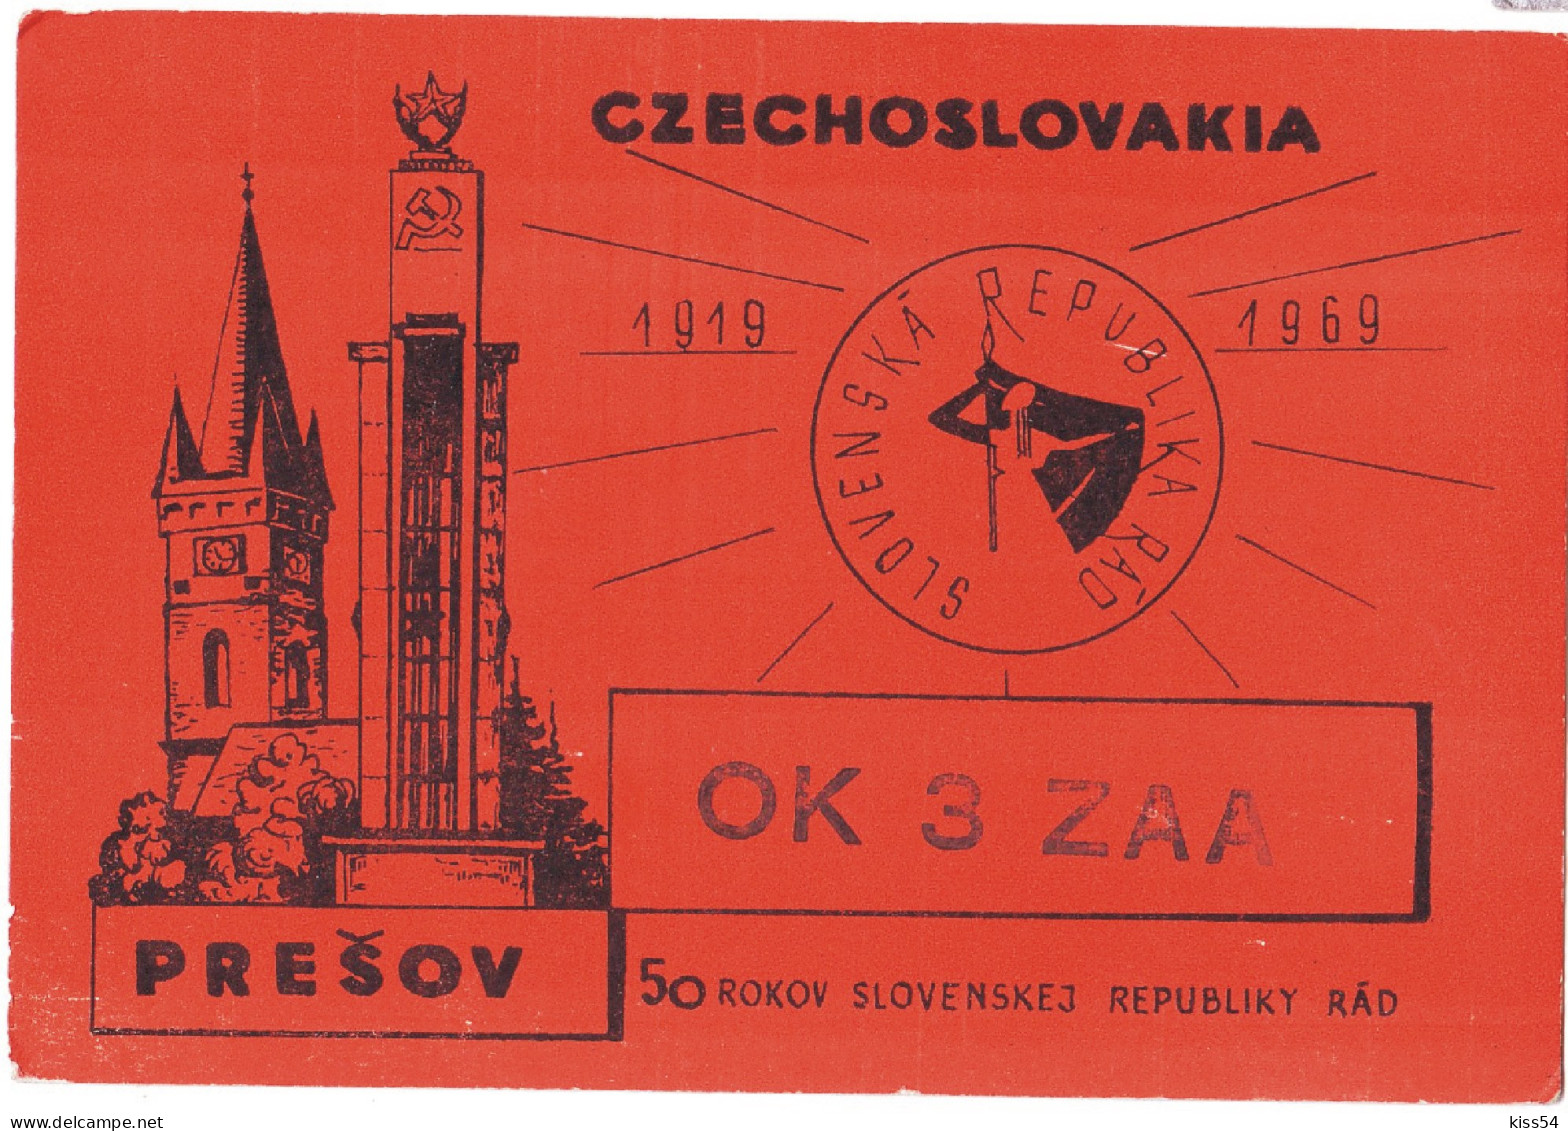 Q 38 - 171-a CZECHOSLOVAKIA - 1968 - Radio Amateur